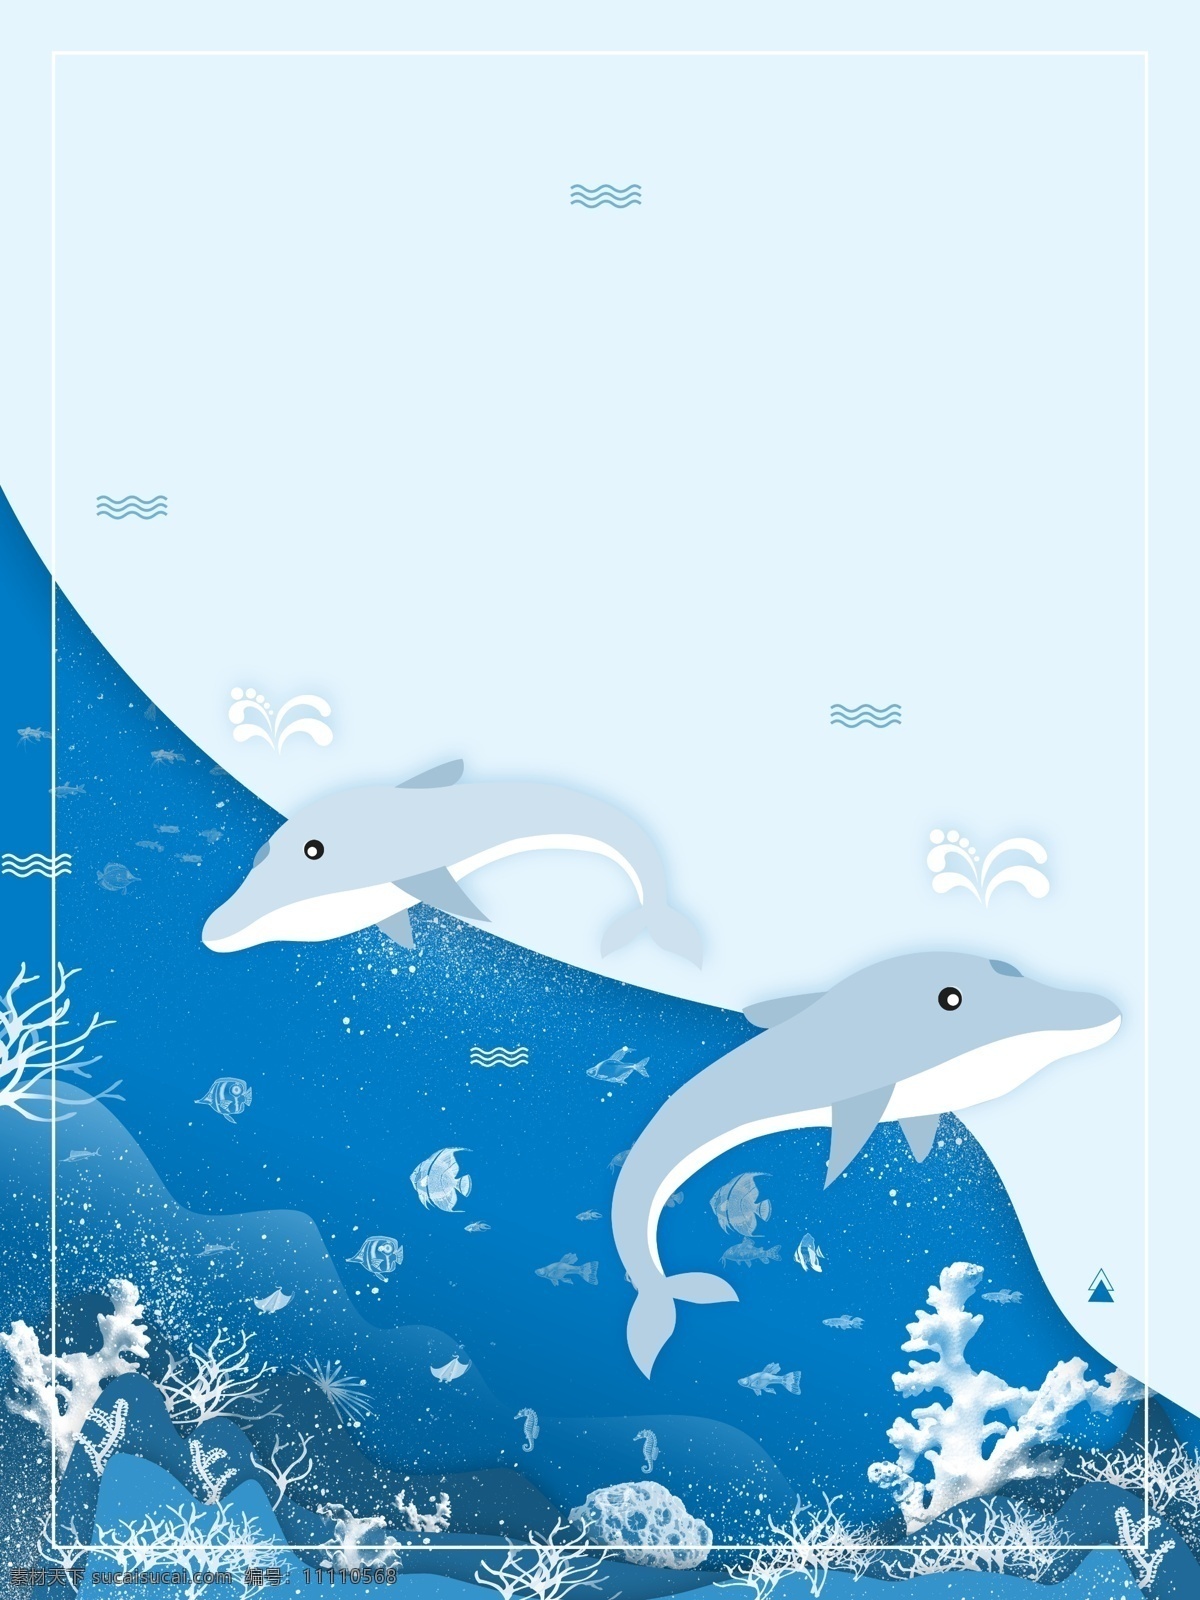 手绘 剪纸 风 海豚 背景 海豚背景 蓝色 海洋生物 海底世界 边框 彩绘背景 通用背景 特邀背景 促销背景 背景展板图